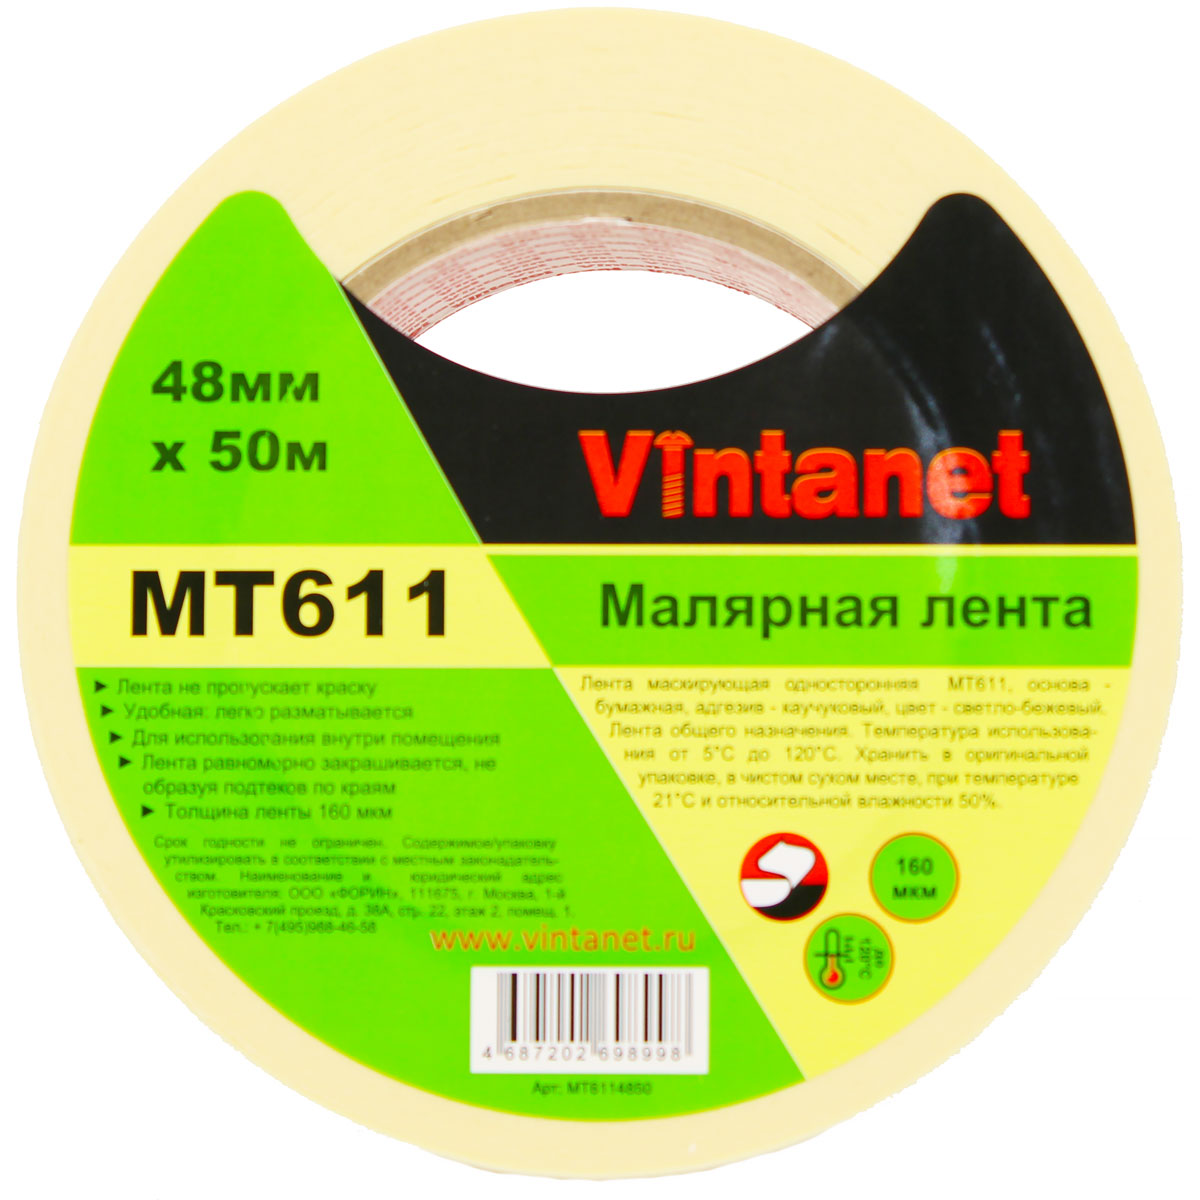 Лента малярная высокотемпературная Vintanet MT611, 120 С, 160 мкм, 48мм х 50м, MT6114850 малярная кисть virtus круглая standard 14 50 мм 001020014